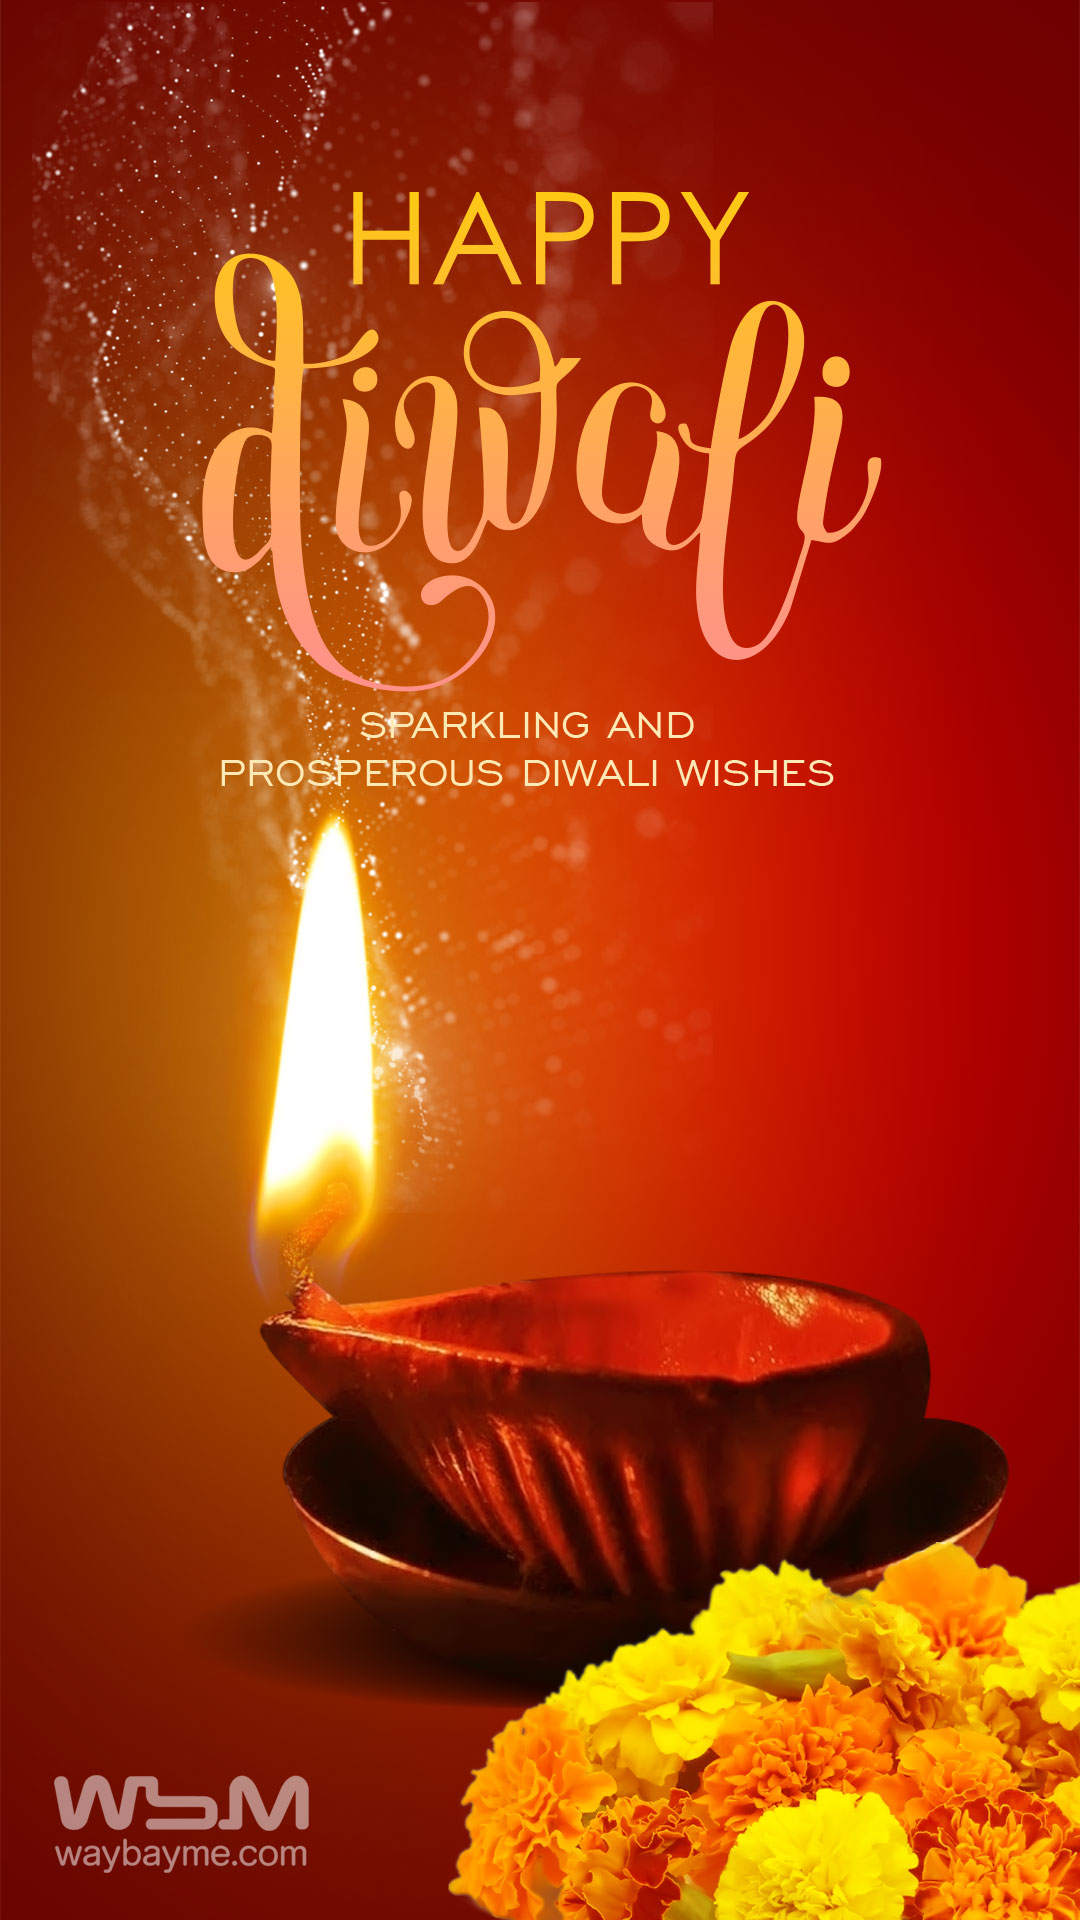 Diwali Images, Diwali Images HD, Diwali msg, Diwali HD Images, Beautiful Diwali Images, Diwali Pictures, Diwali Wishes, Diwali Greetings, Diwali Wallpapers, Best Diwali Images, Diwali Messages, Diwali Whatsapp Status, Best Diwali Greetings